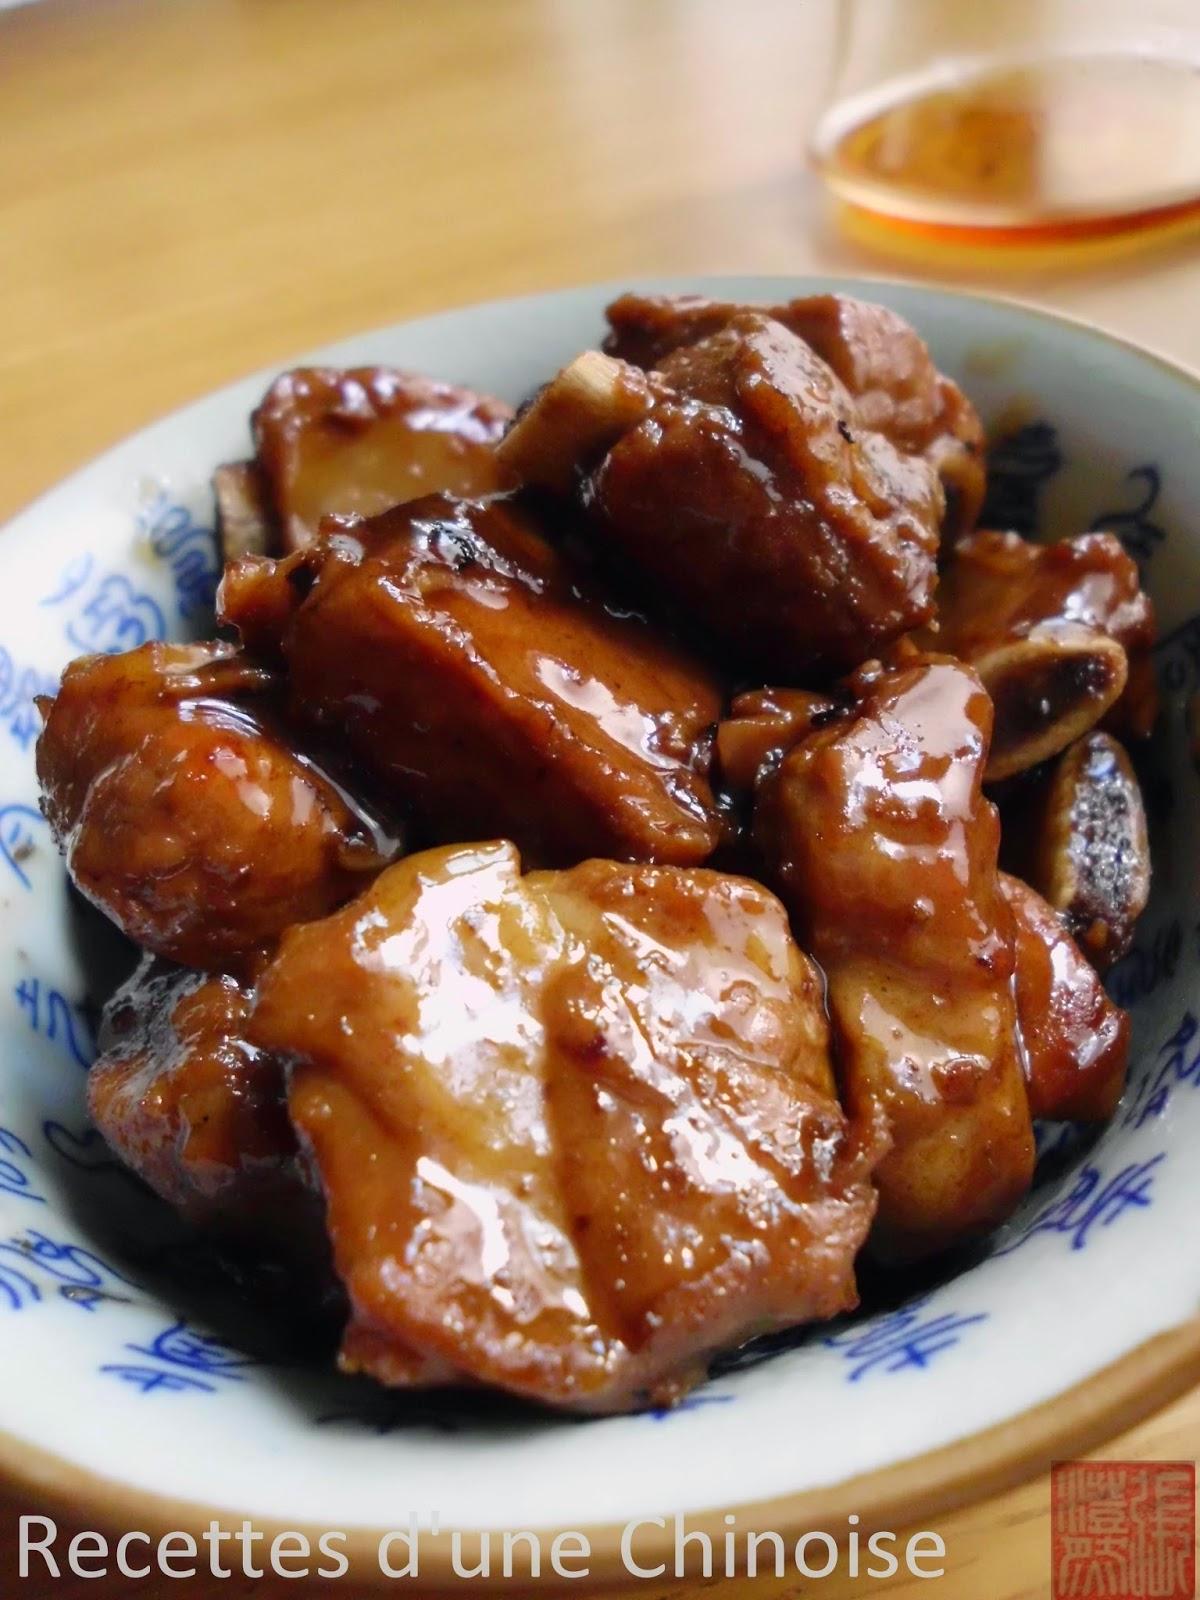 Travers de porc hongshao (le braisage rouge) 红烧排骨 hóngshāo páigǔ